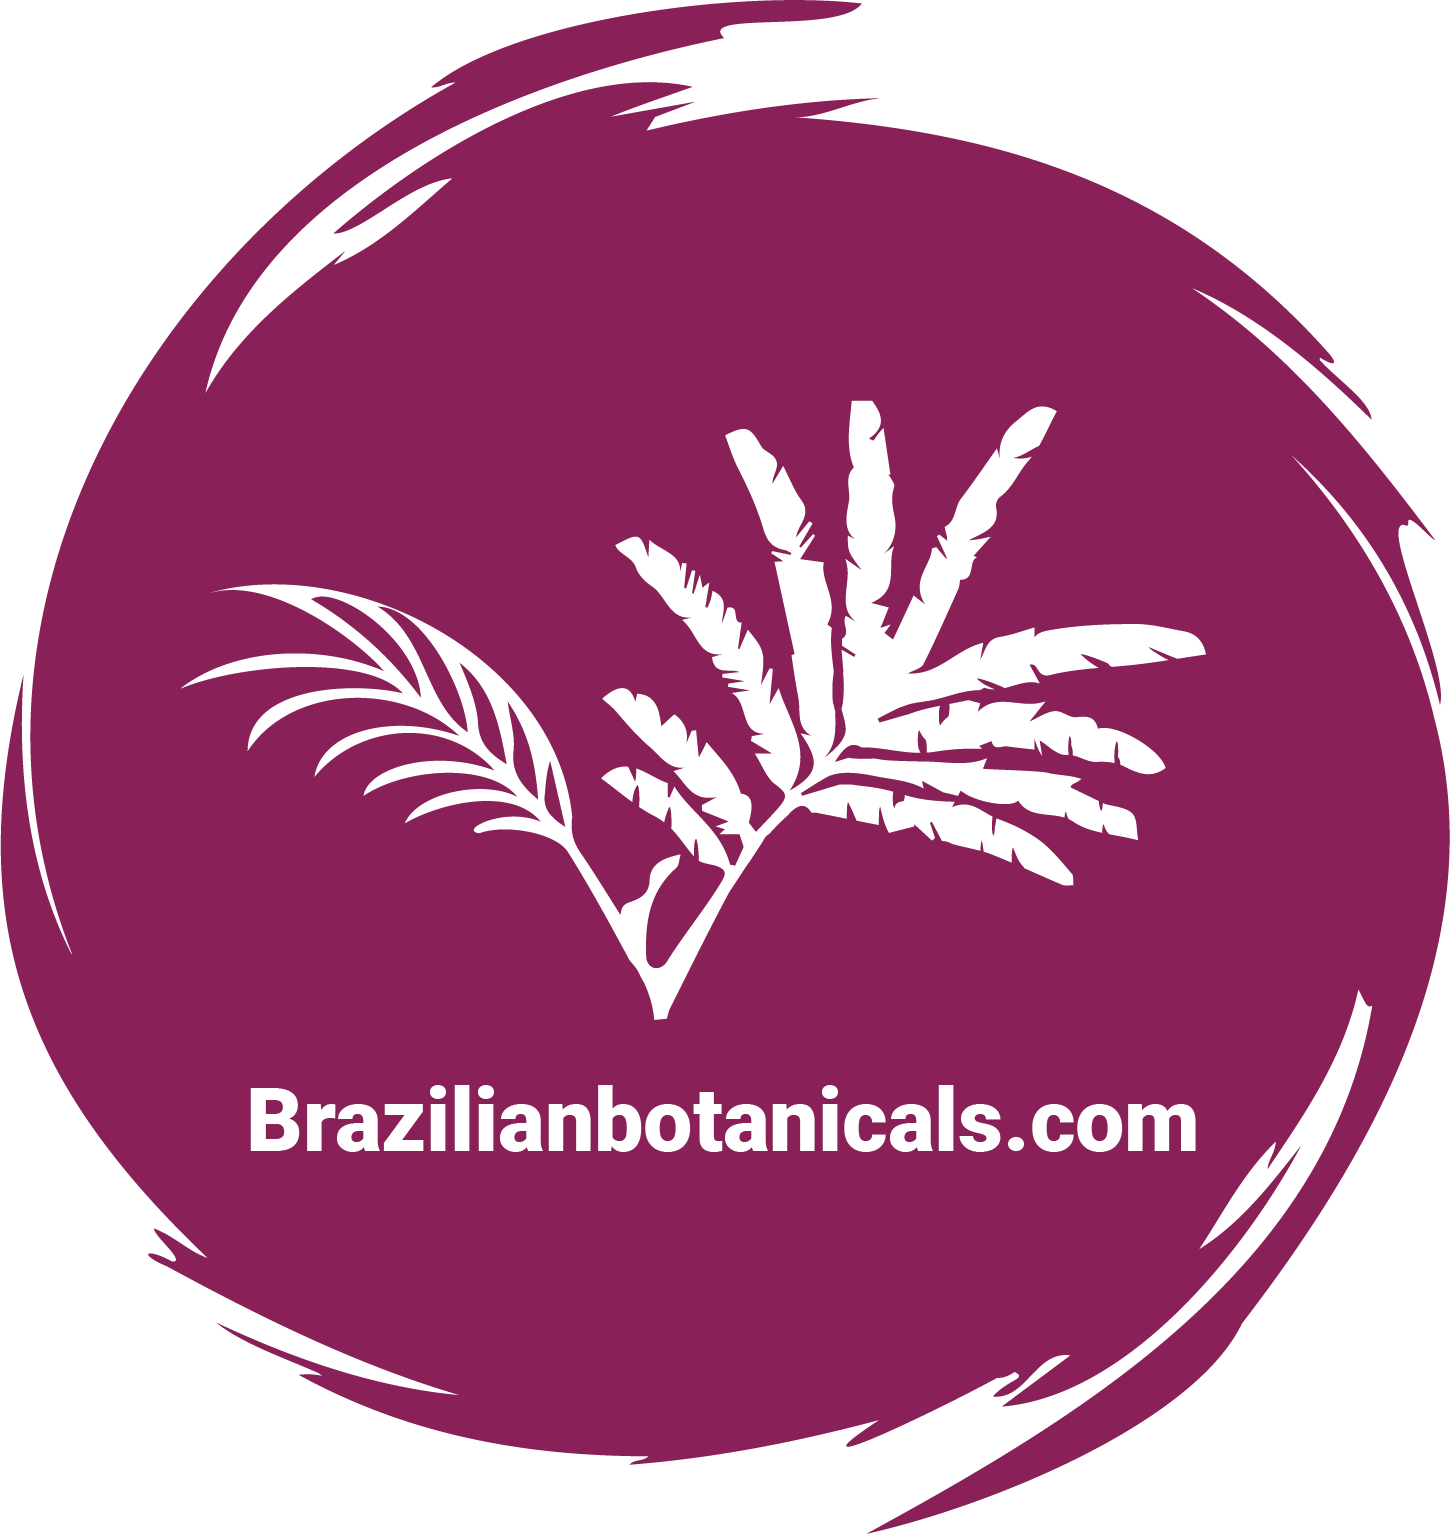 Brazilianbotanicals